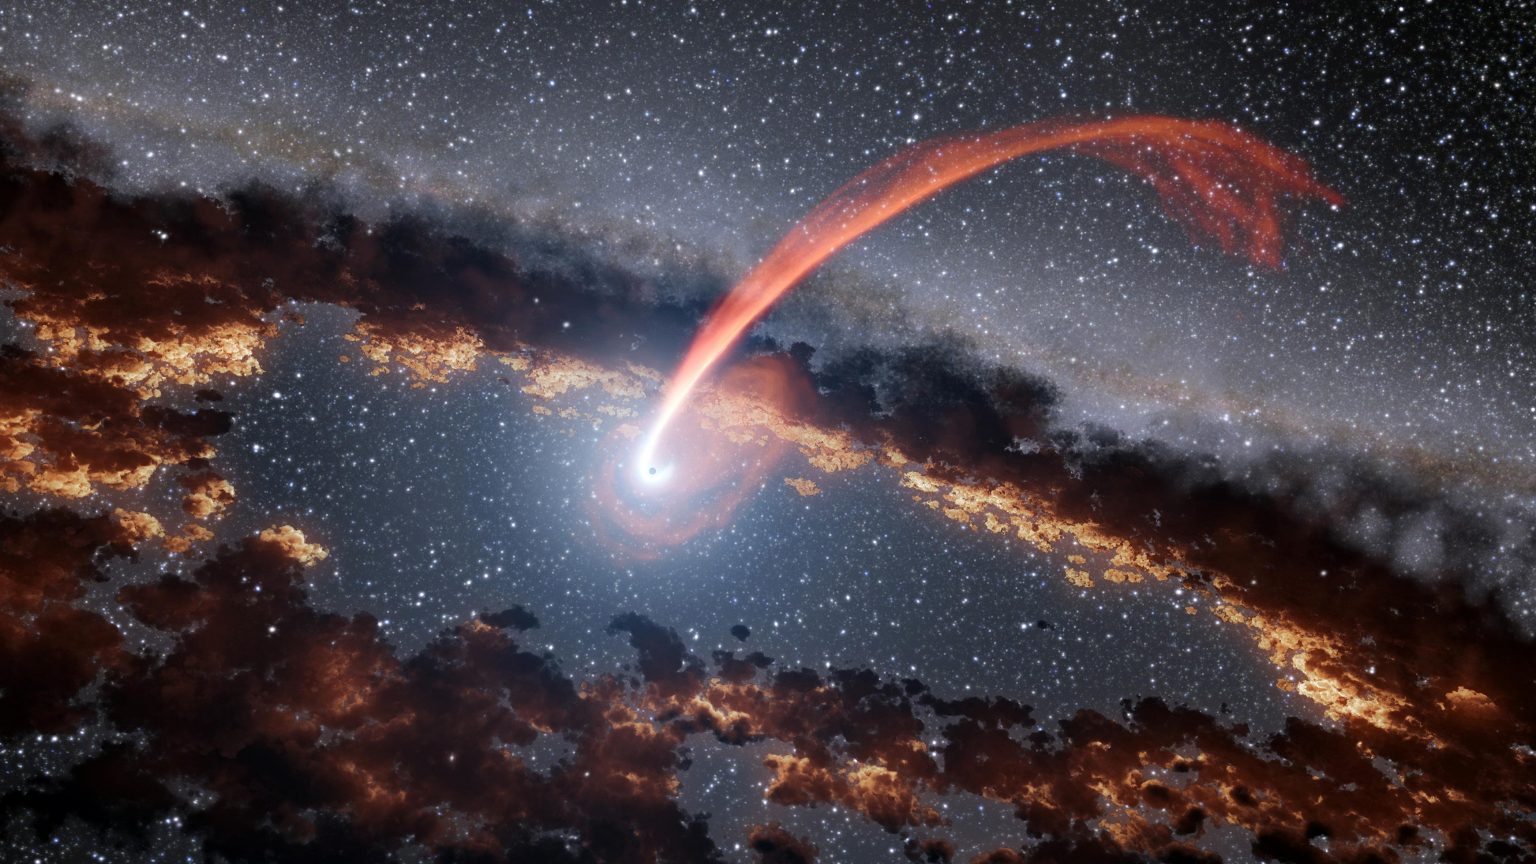 Lỗ đen vũ trụ: Những bí ẩn đằng sau lỗ đen vũ trụ sẽ khiến bạn bất ngờ! Hãy khám phá những hình ảnh tuyệt đẹp về vùng không gian đen tối này để tìm hiểu thêm về chúng. Đừng bỏ lỡ cơ hội để chiêm ngưỡng những hình ảnh đầy mê hoặc về lỗ đen vũ trụ.